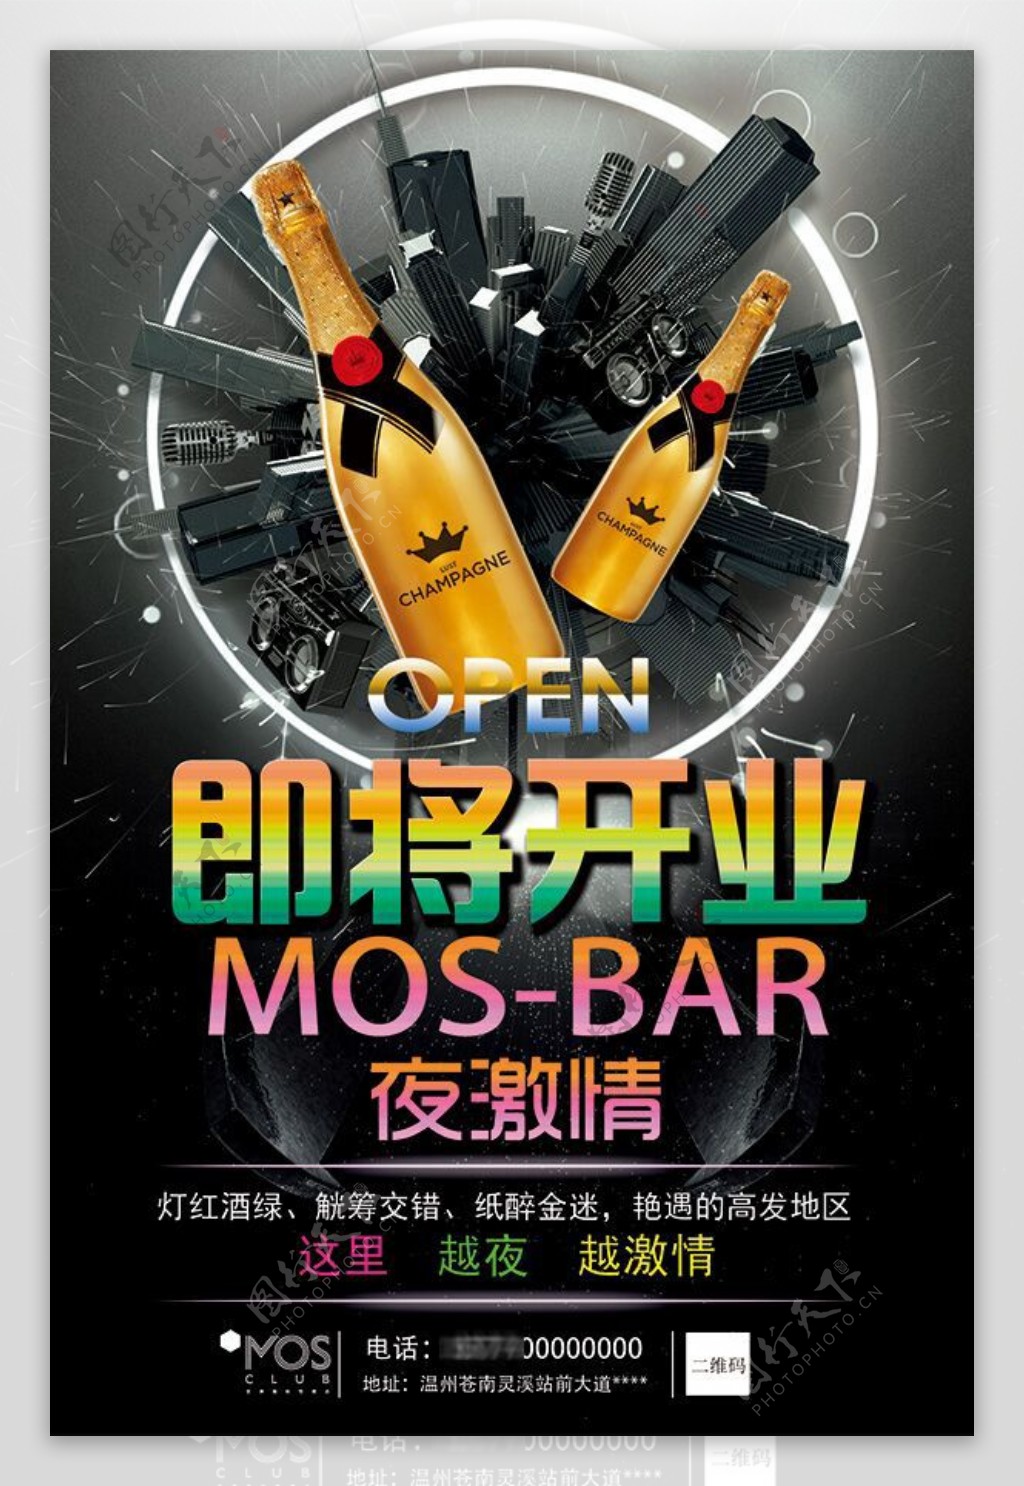 酒吧开业活动宣传海报设计psd素材下载